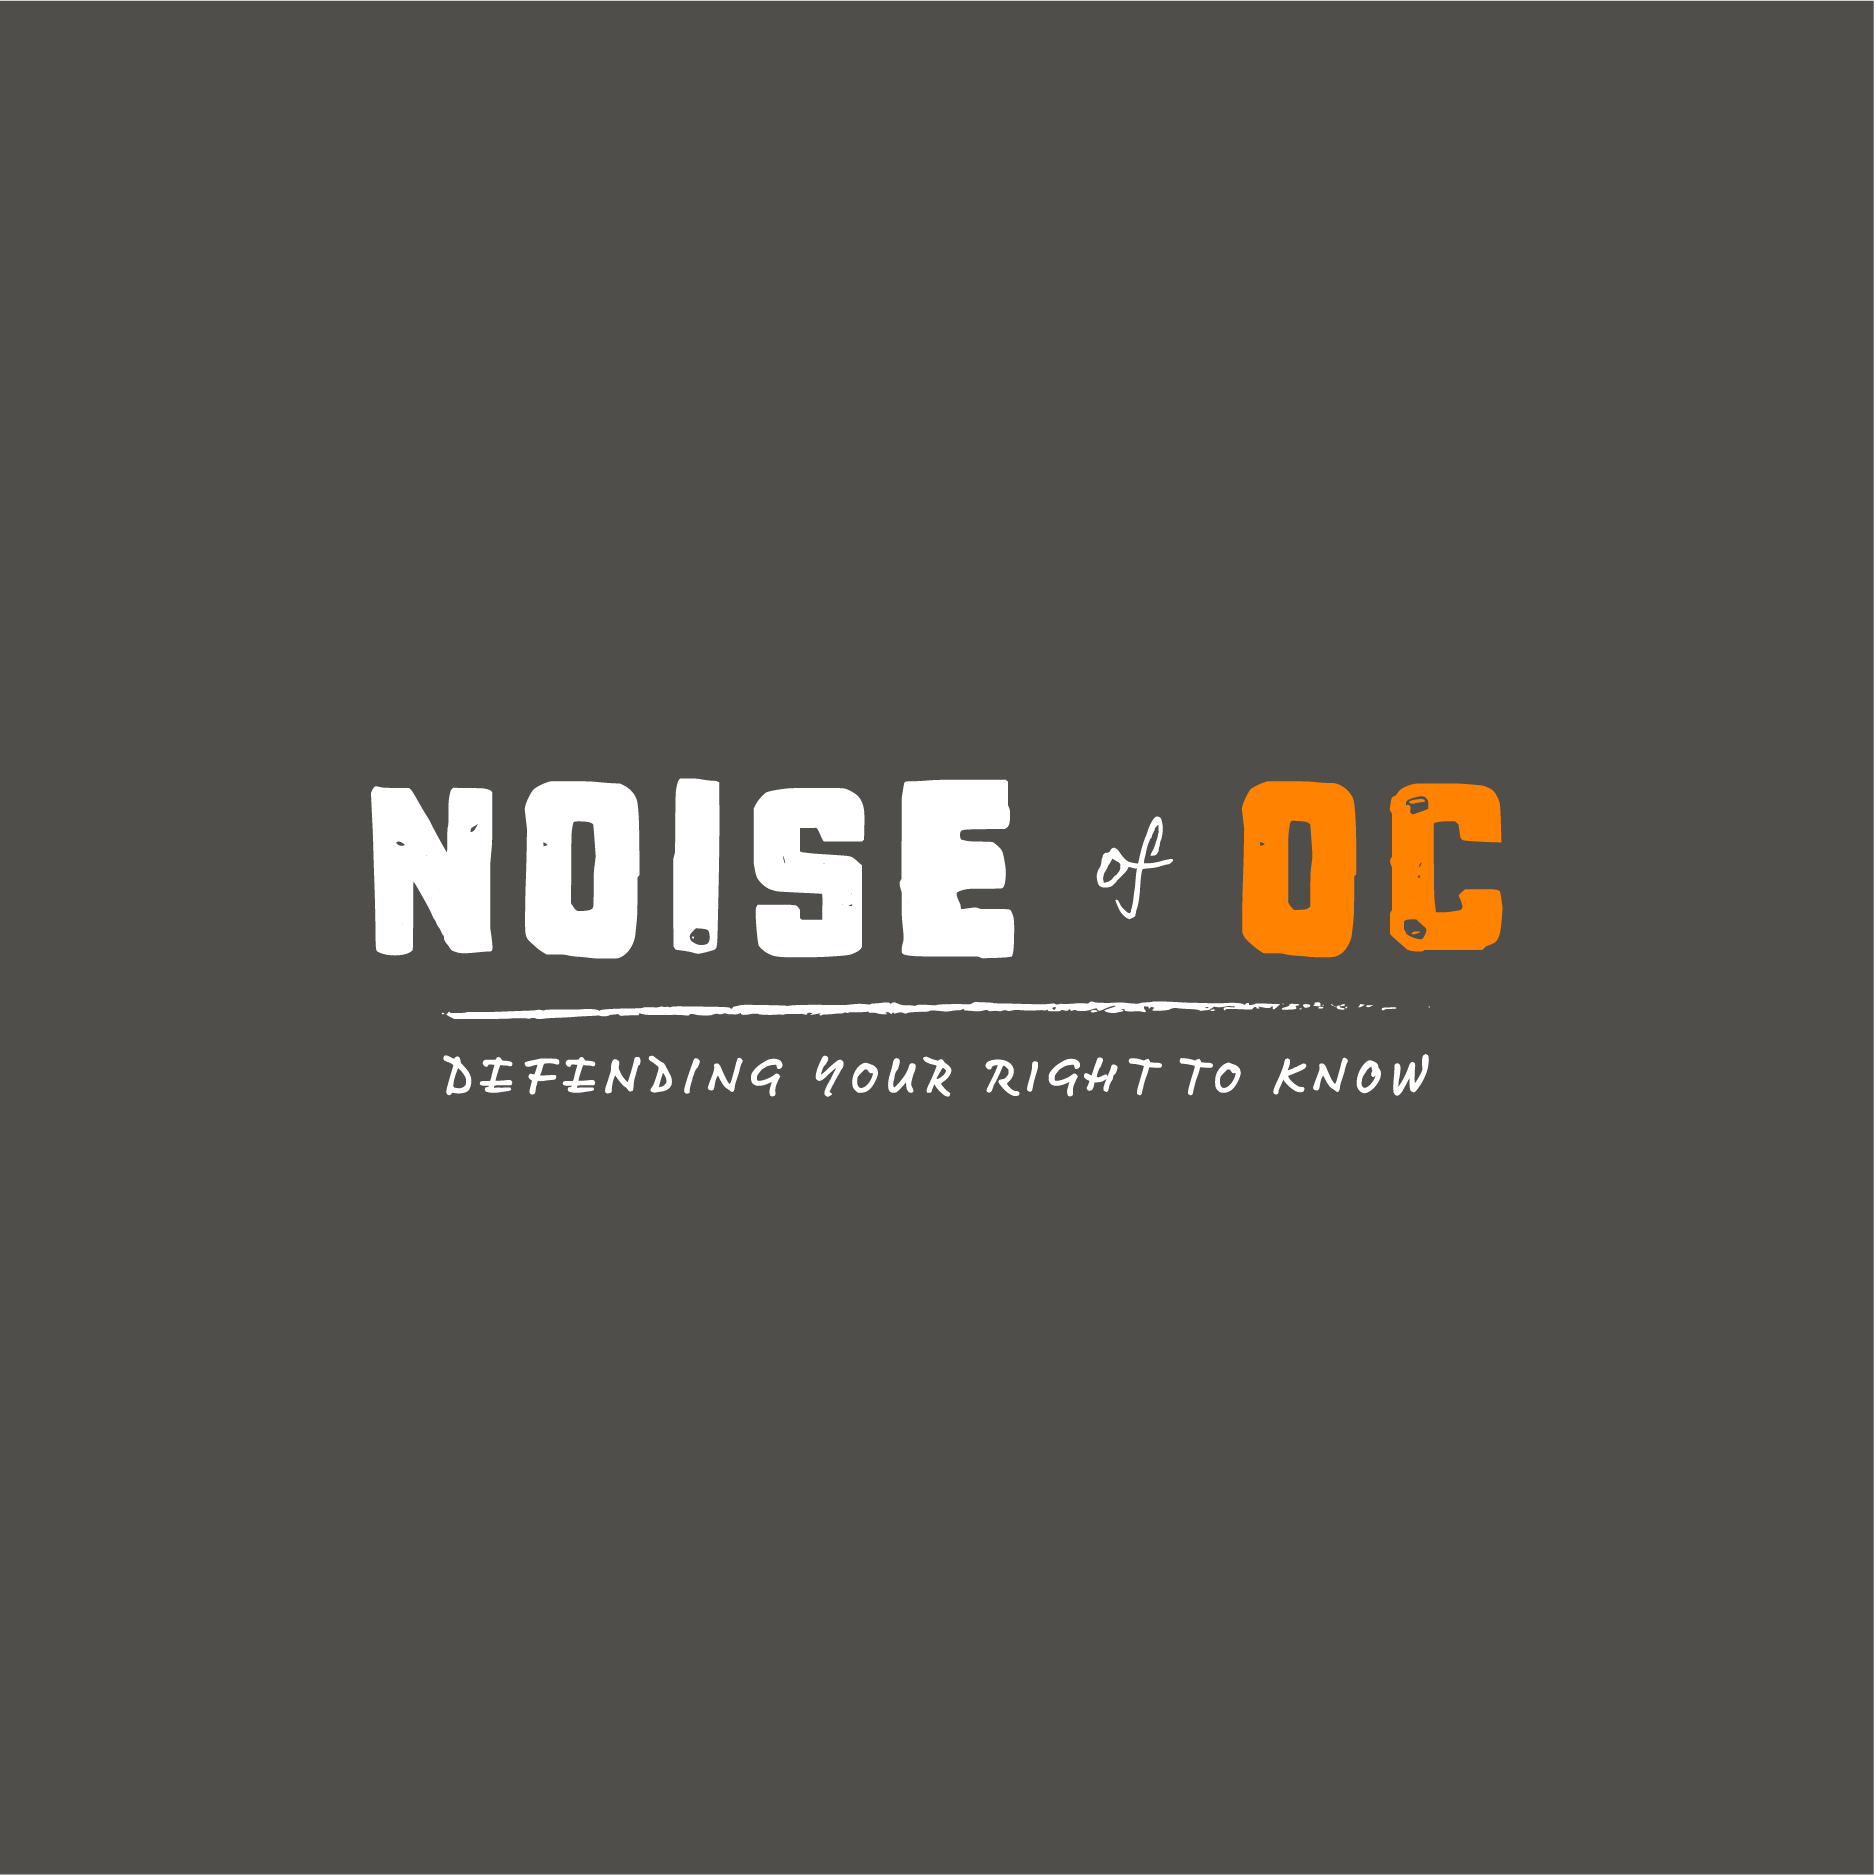 Noise of OC Fundraiser for Voice of OC (Travel Mug) shirt design - zoomed